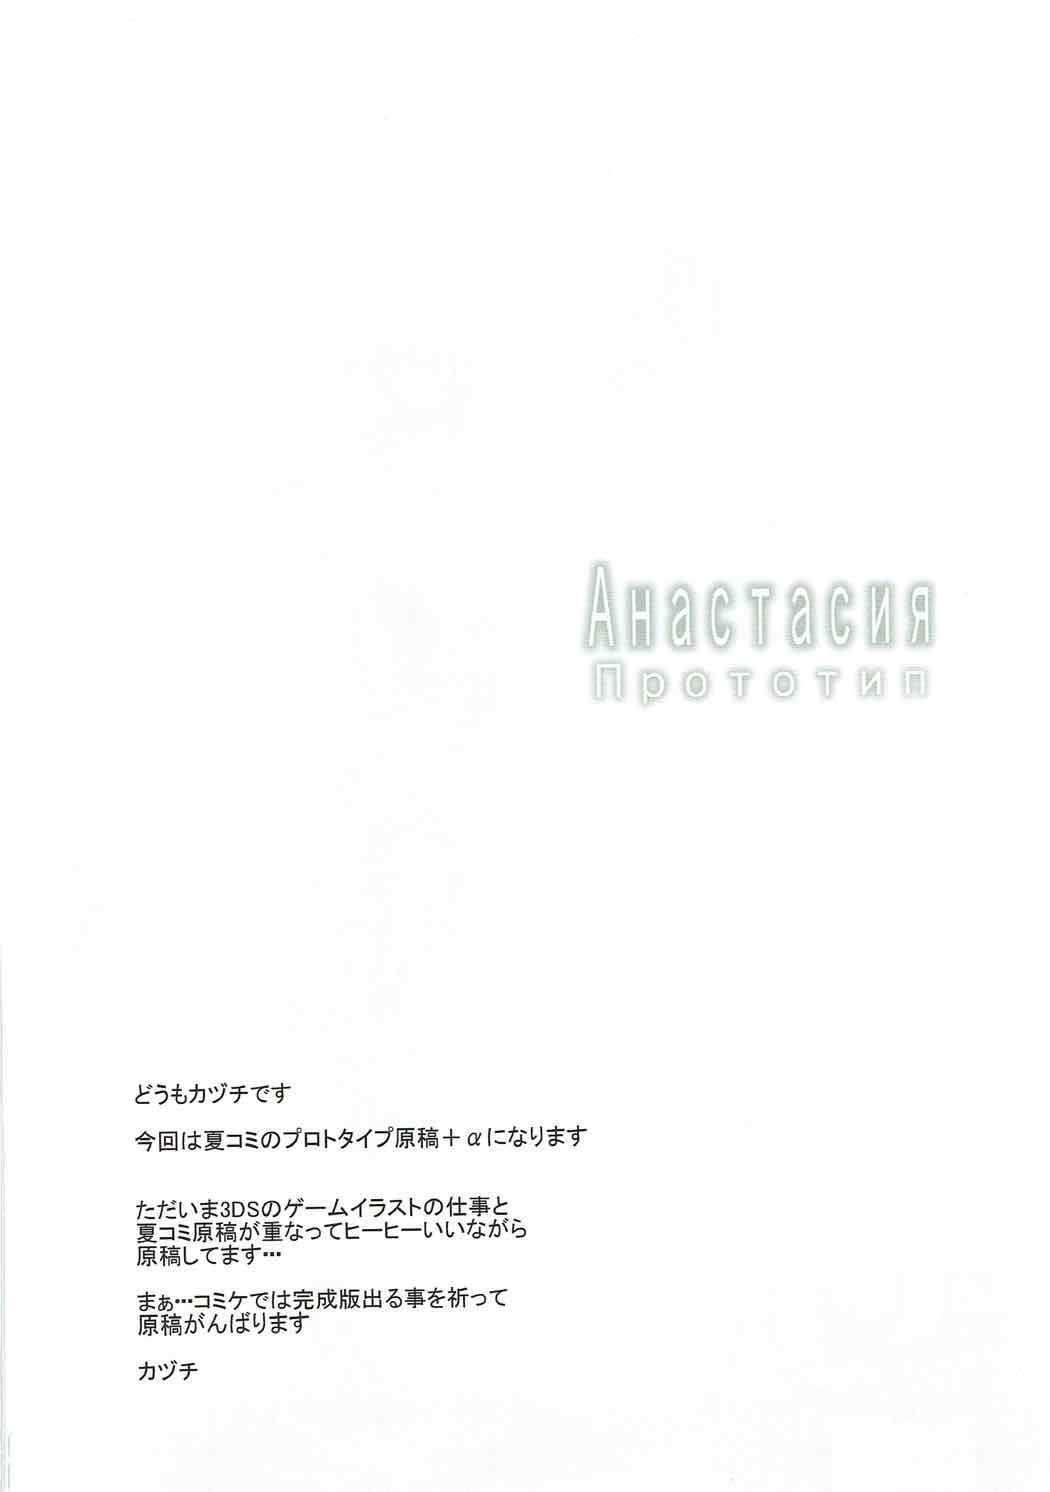 (アイドルサバイバル5) [Sweet Avenue (カヅチ)] Анастасия прототип (アイドルマスター シンデレラガールズ)